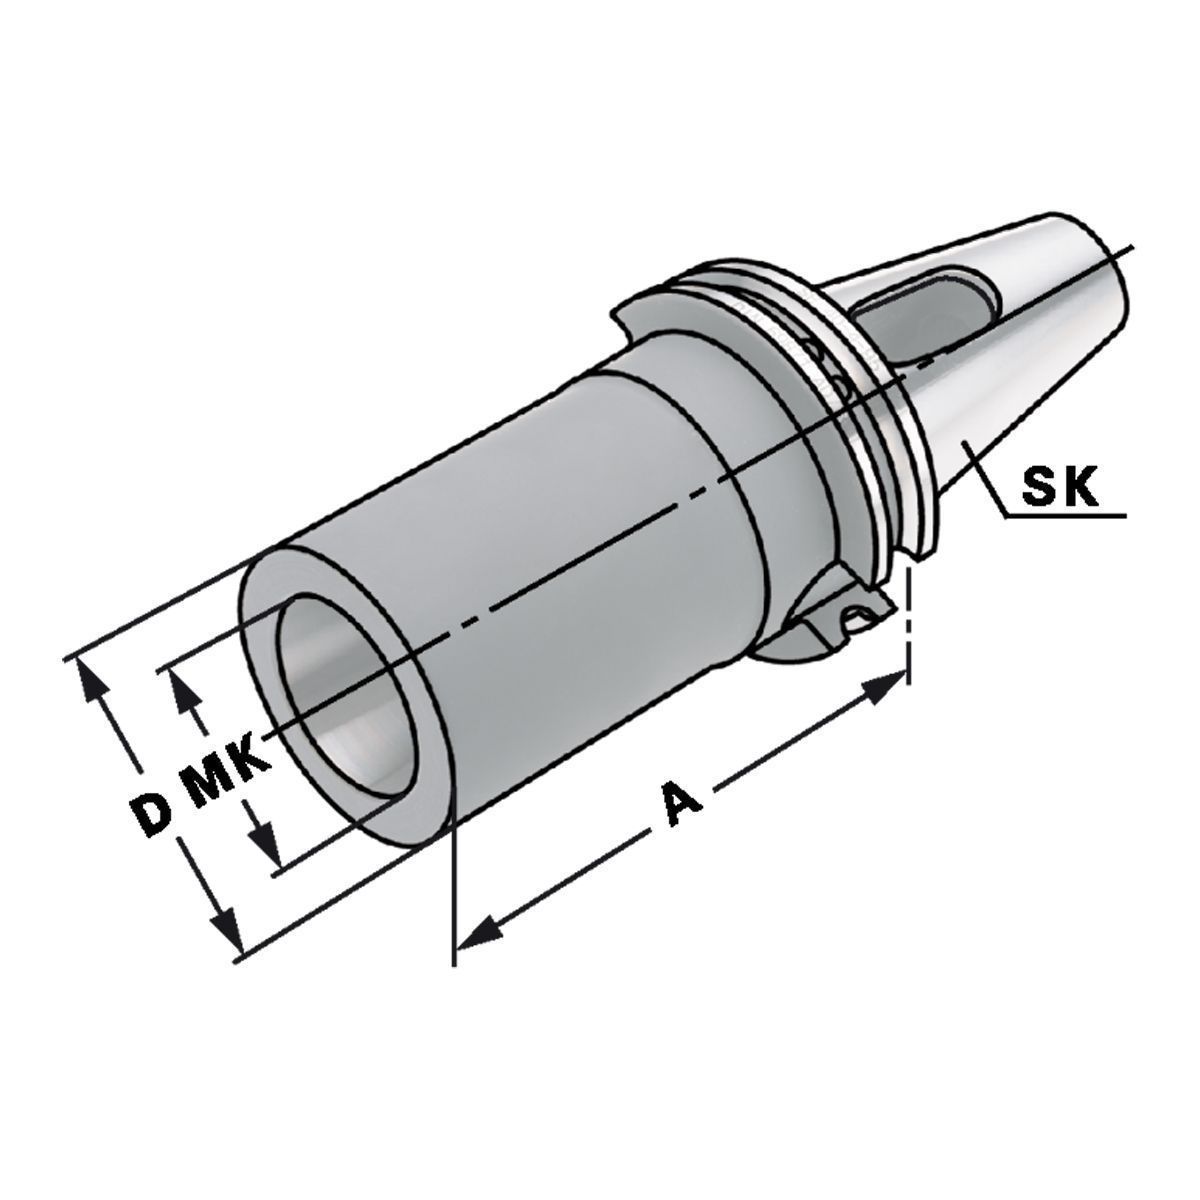 Zwischenhülse SK 50-5-105 für MK mit Austreiblappen DIN 6383